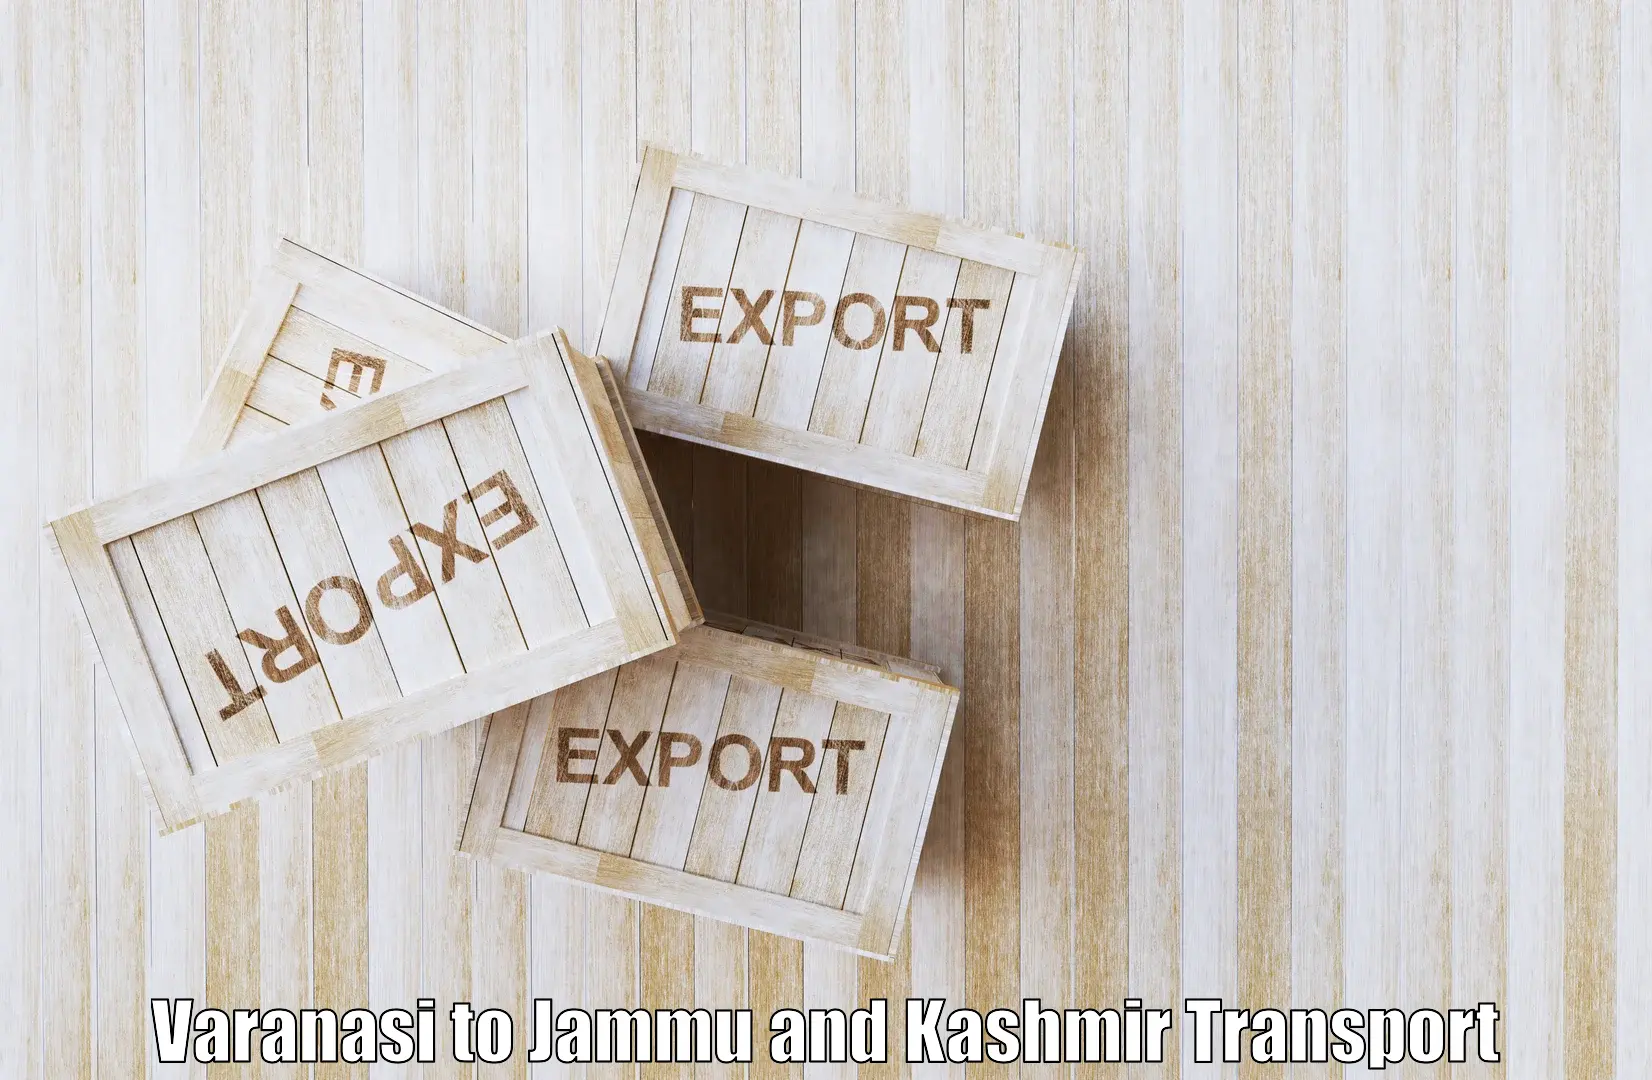 Express transport services Varanasi to University of Kashmir Srinagar